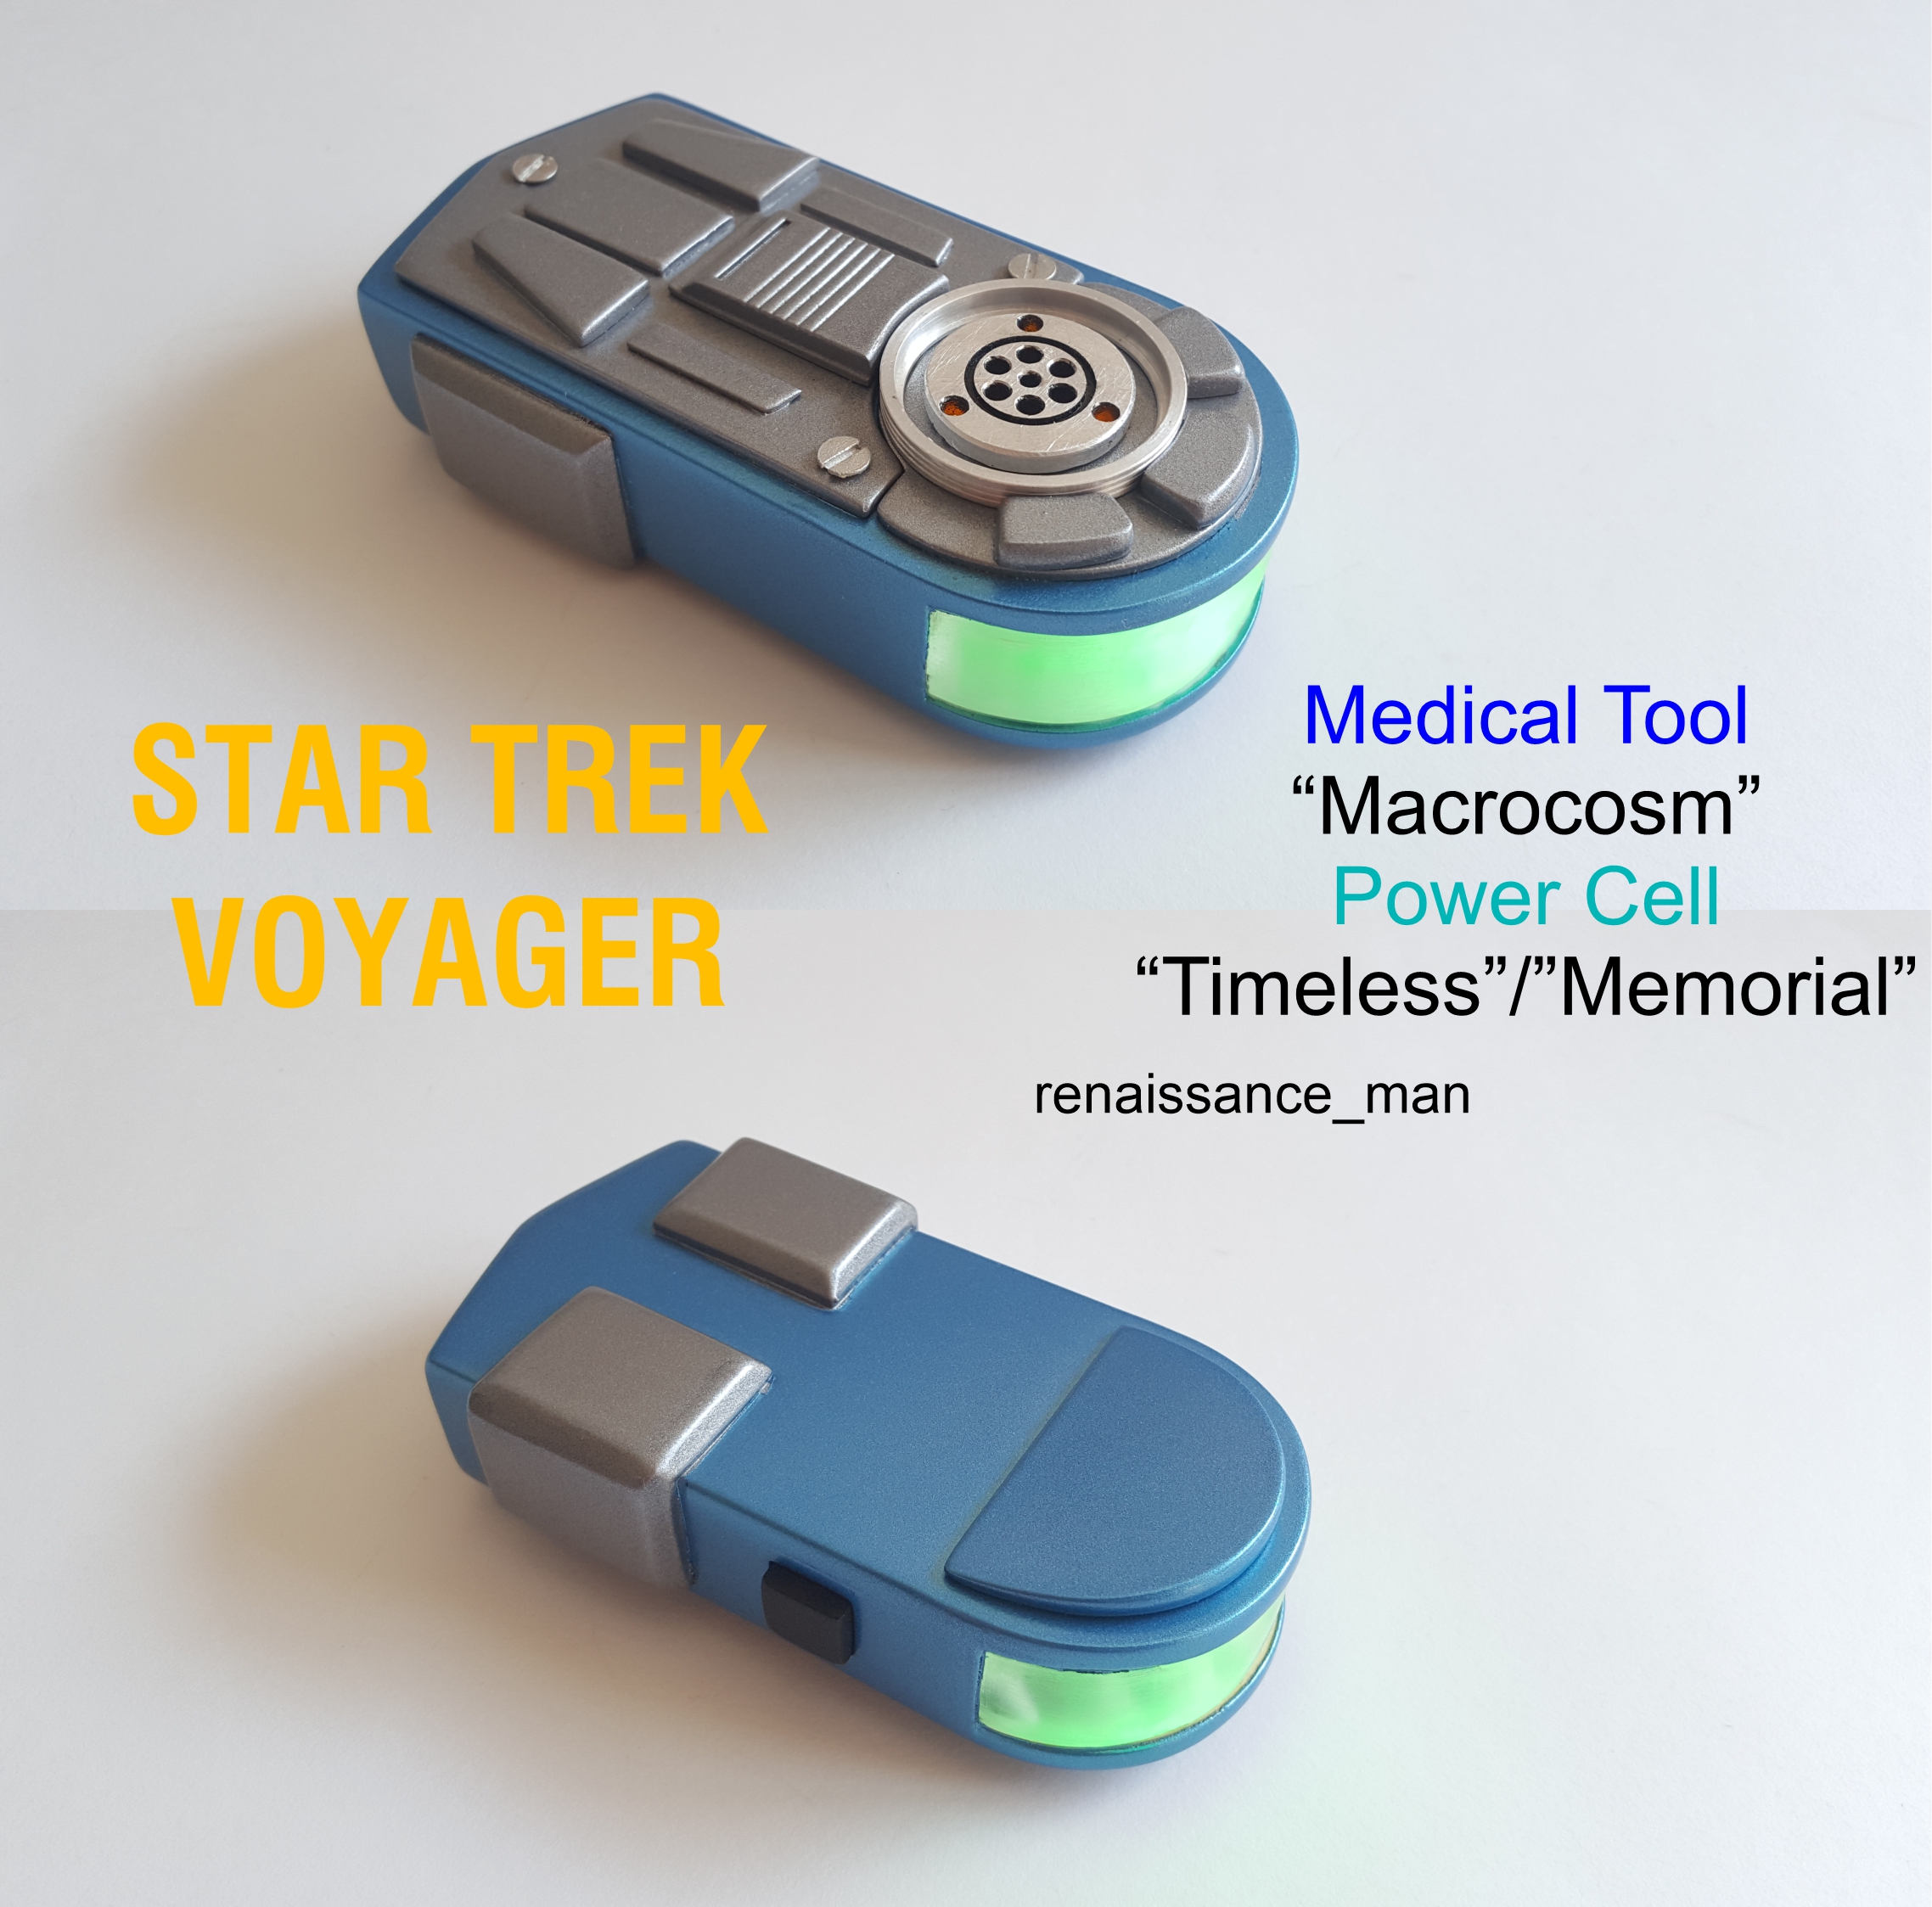 Voyager-Power-Cell-Timeless.jpg